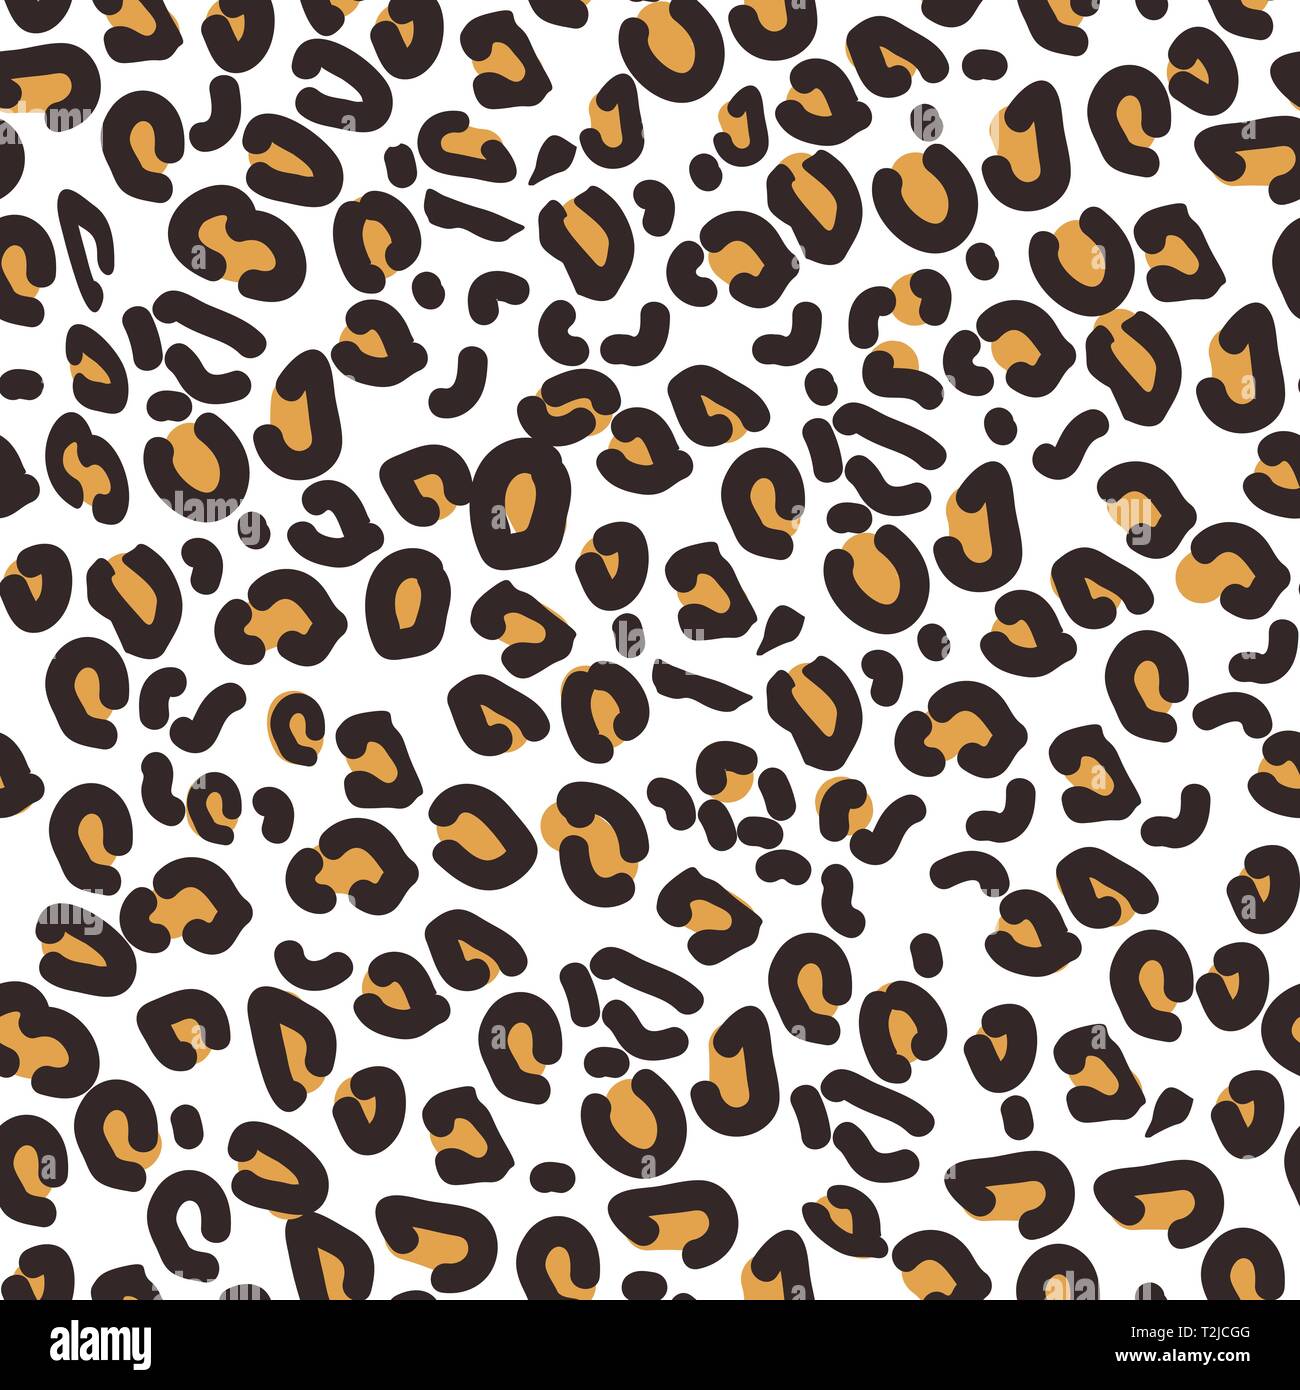 https://c8.alamy.com/compde/t2jcgg/leopardenmuster-die-nahtlose-vektor-drucken-realistische-tier-textur-abstrakte-sich-wiederholendes-muster-leopard-skin-nachahmung-kann-gemalt-auf-kleidung-oder-fab-t2jcgg.jpg